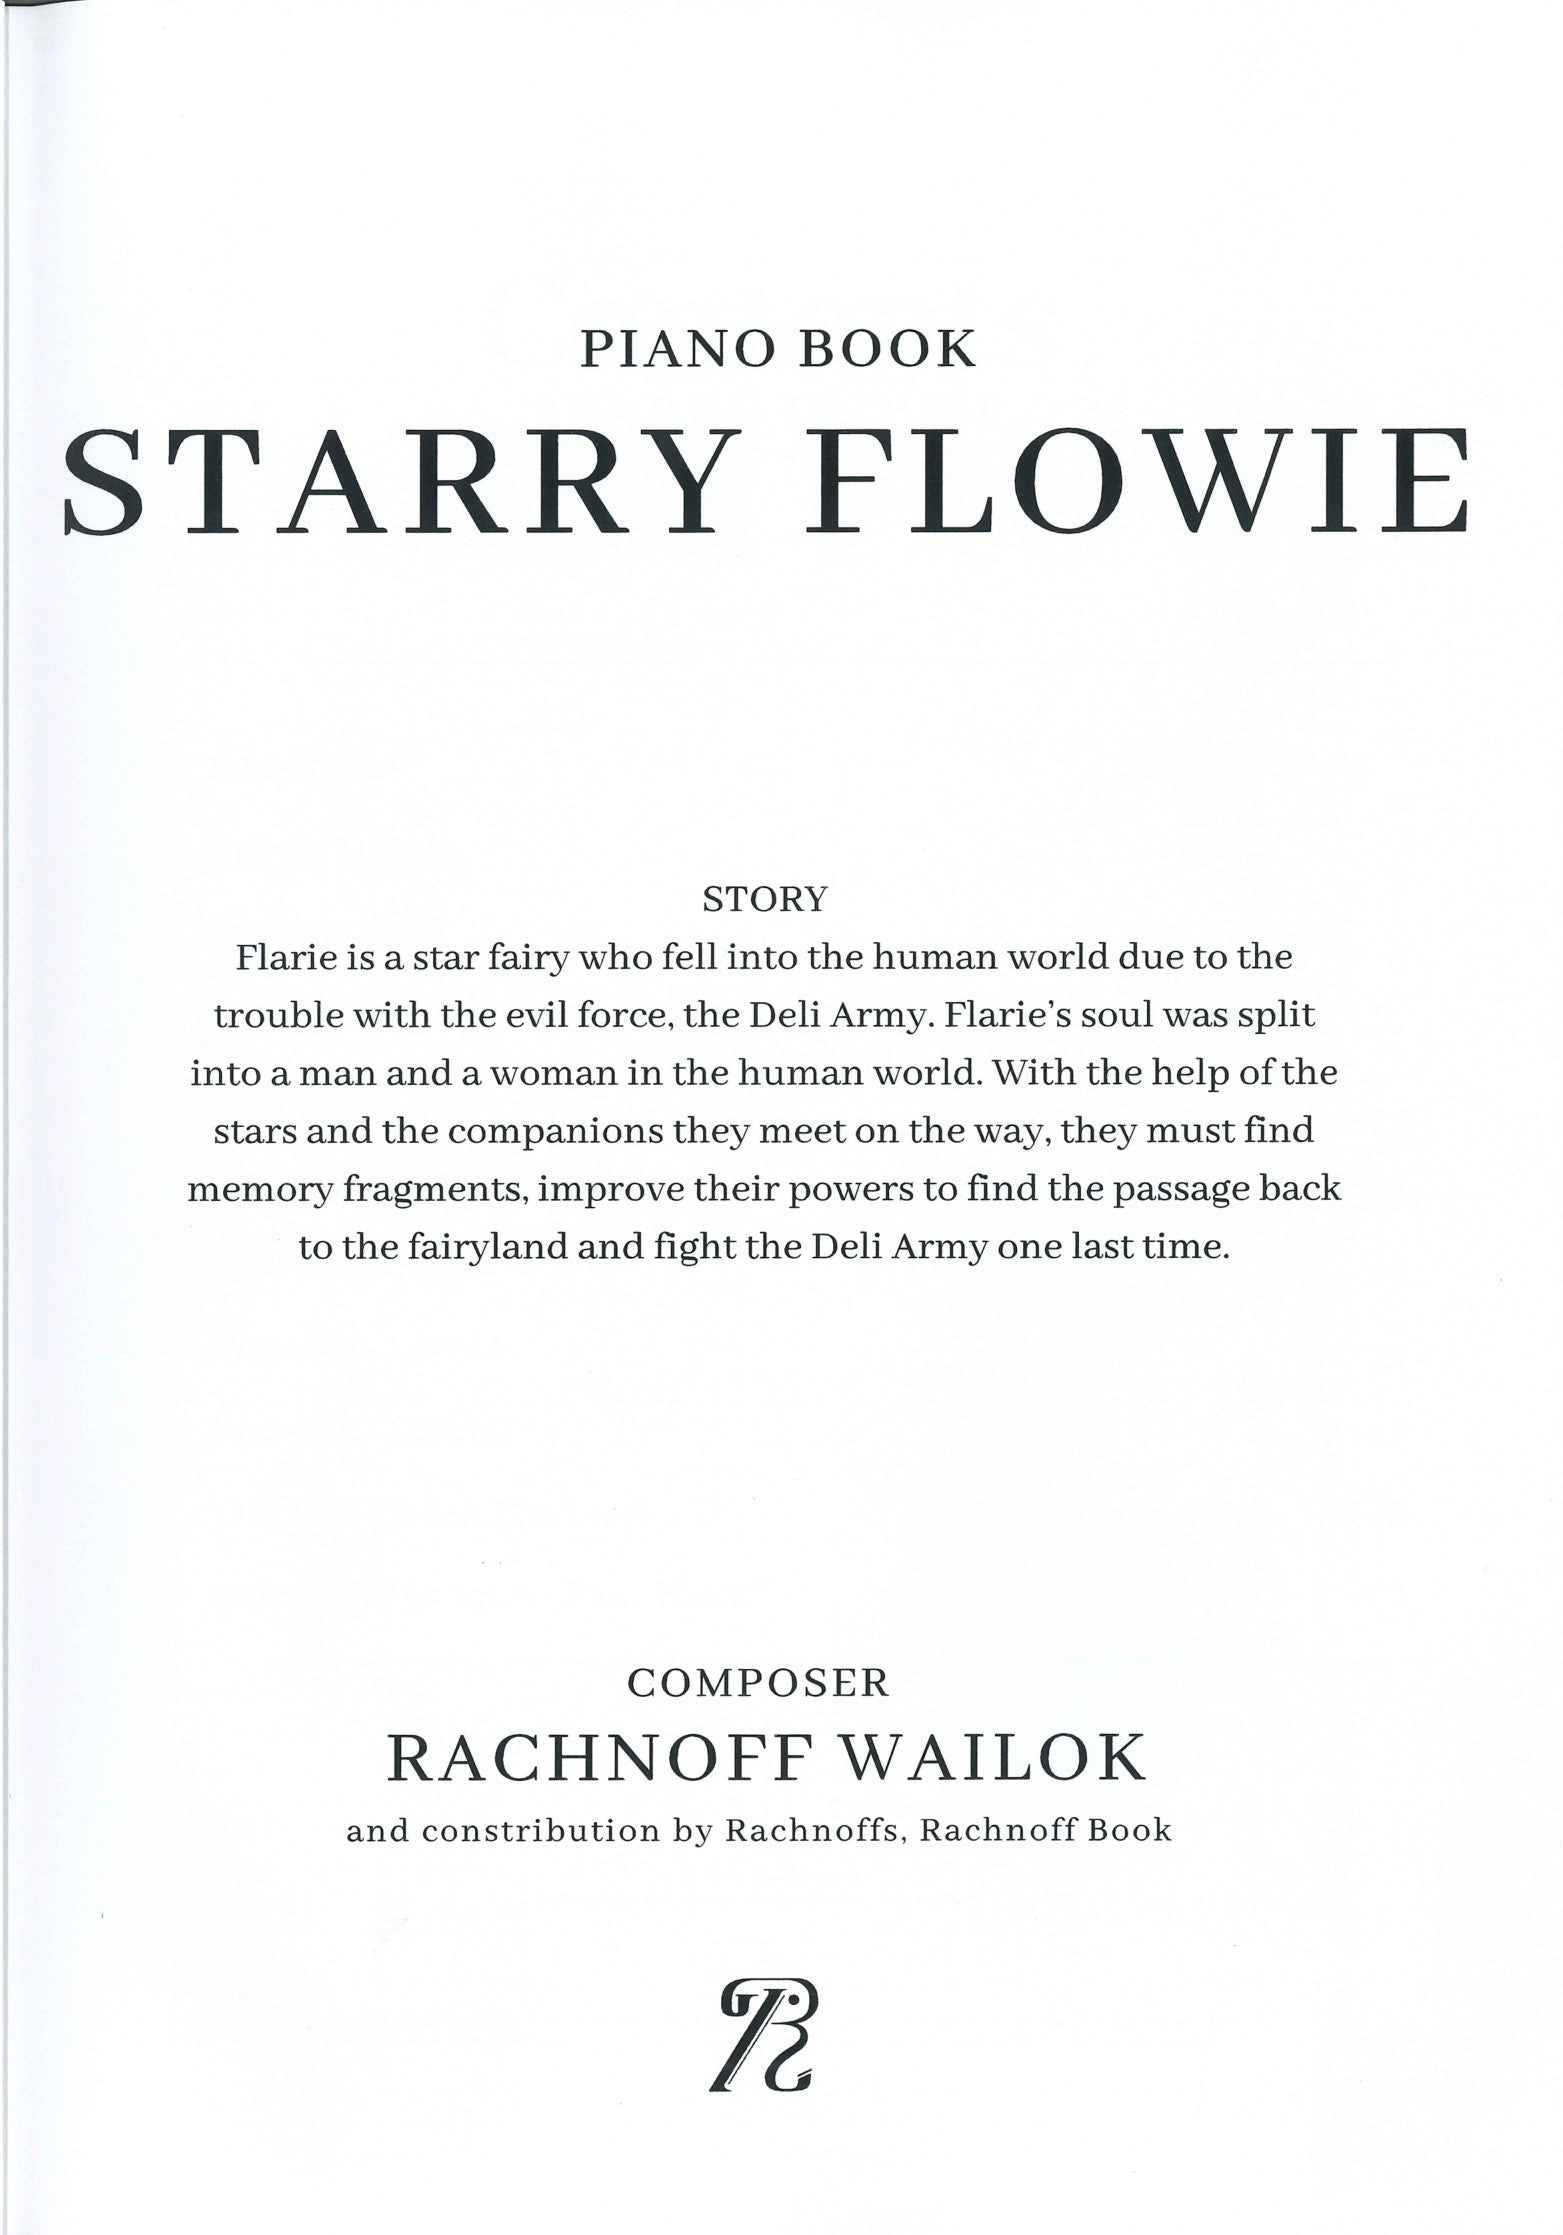 Starry Flowie Easy Piano Score